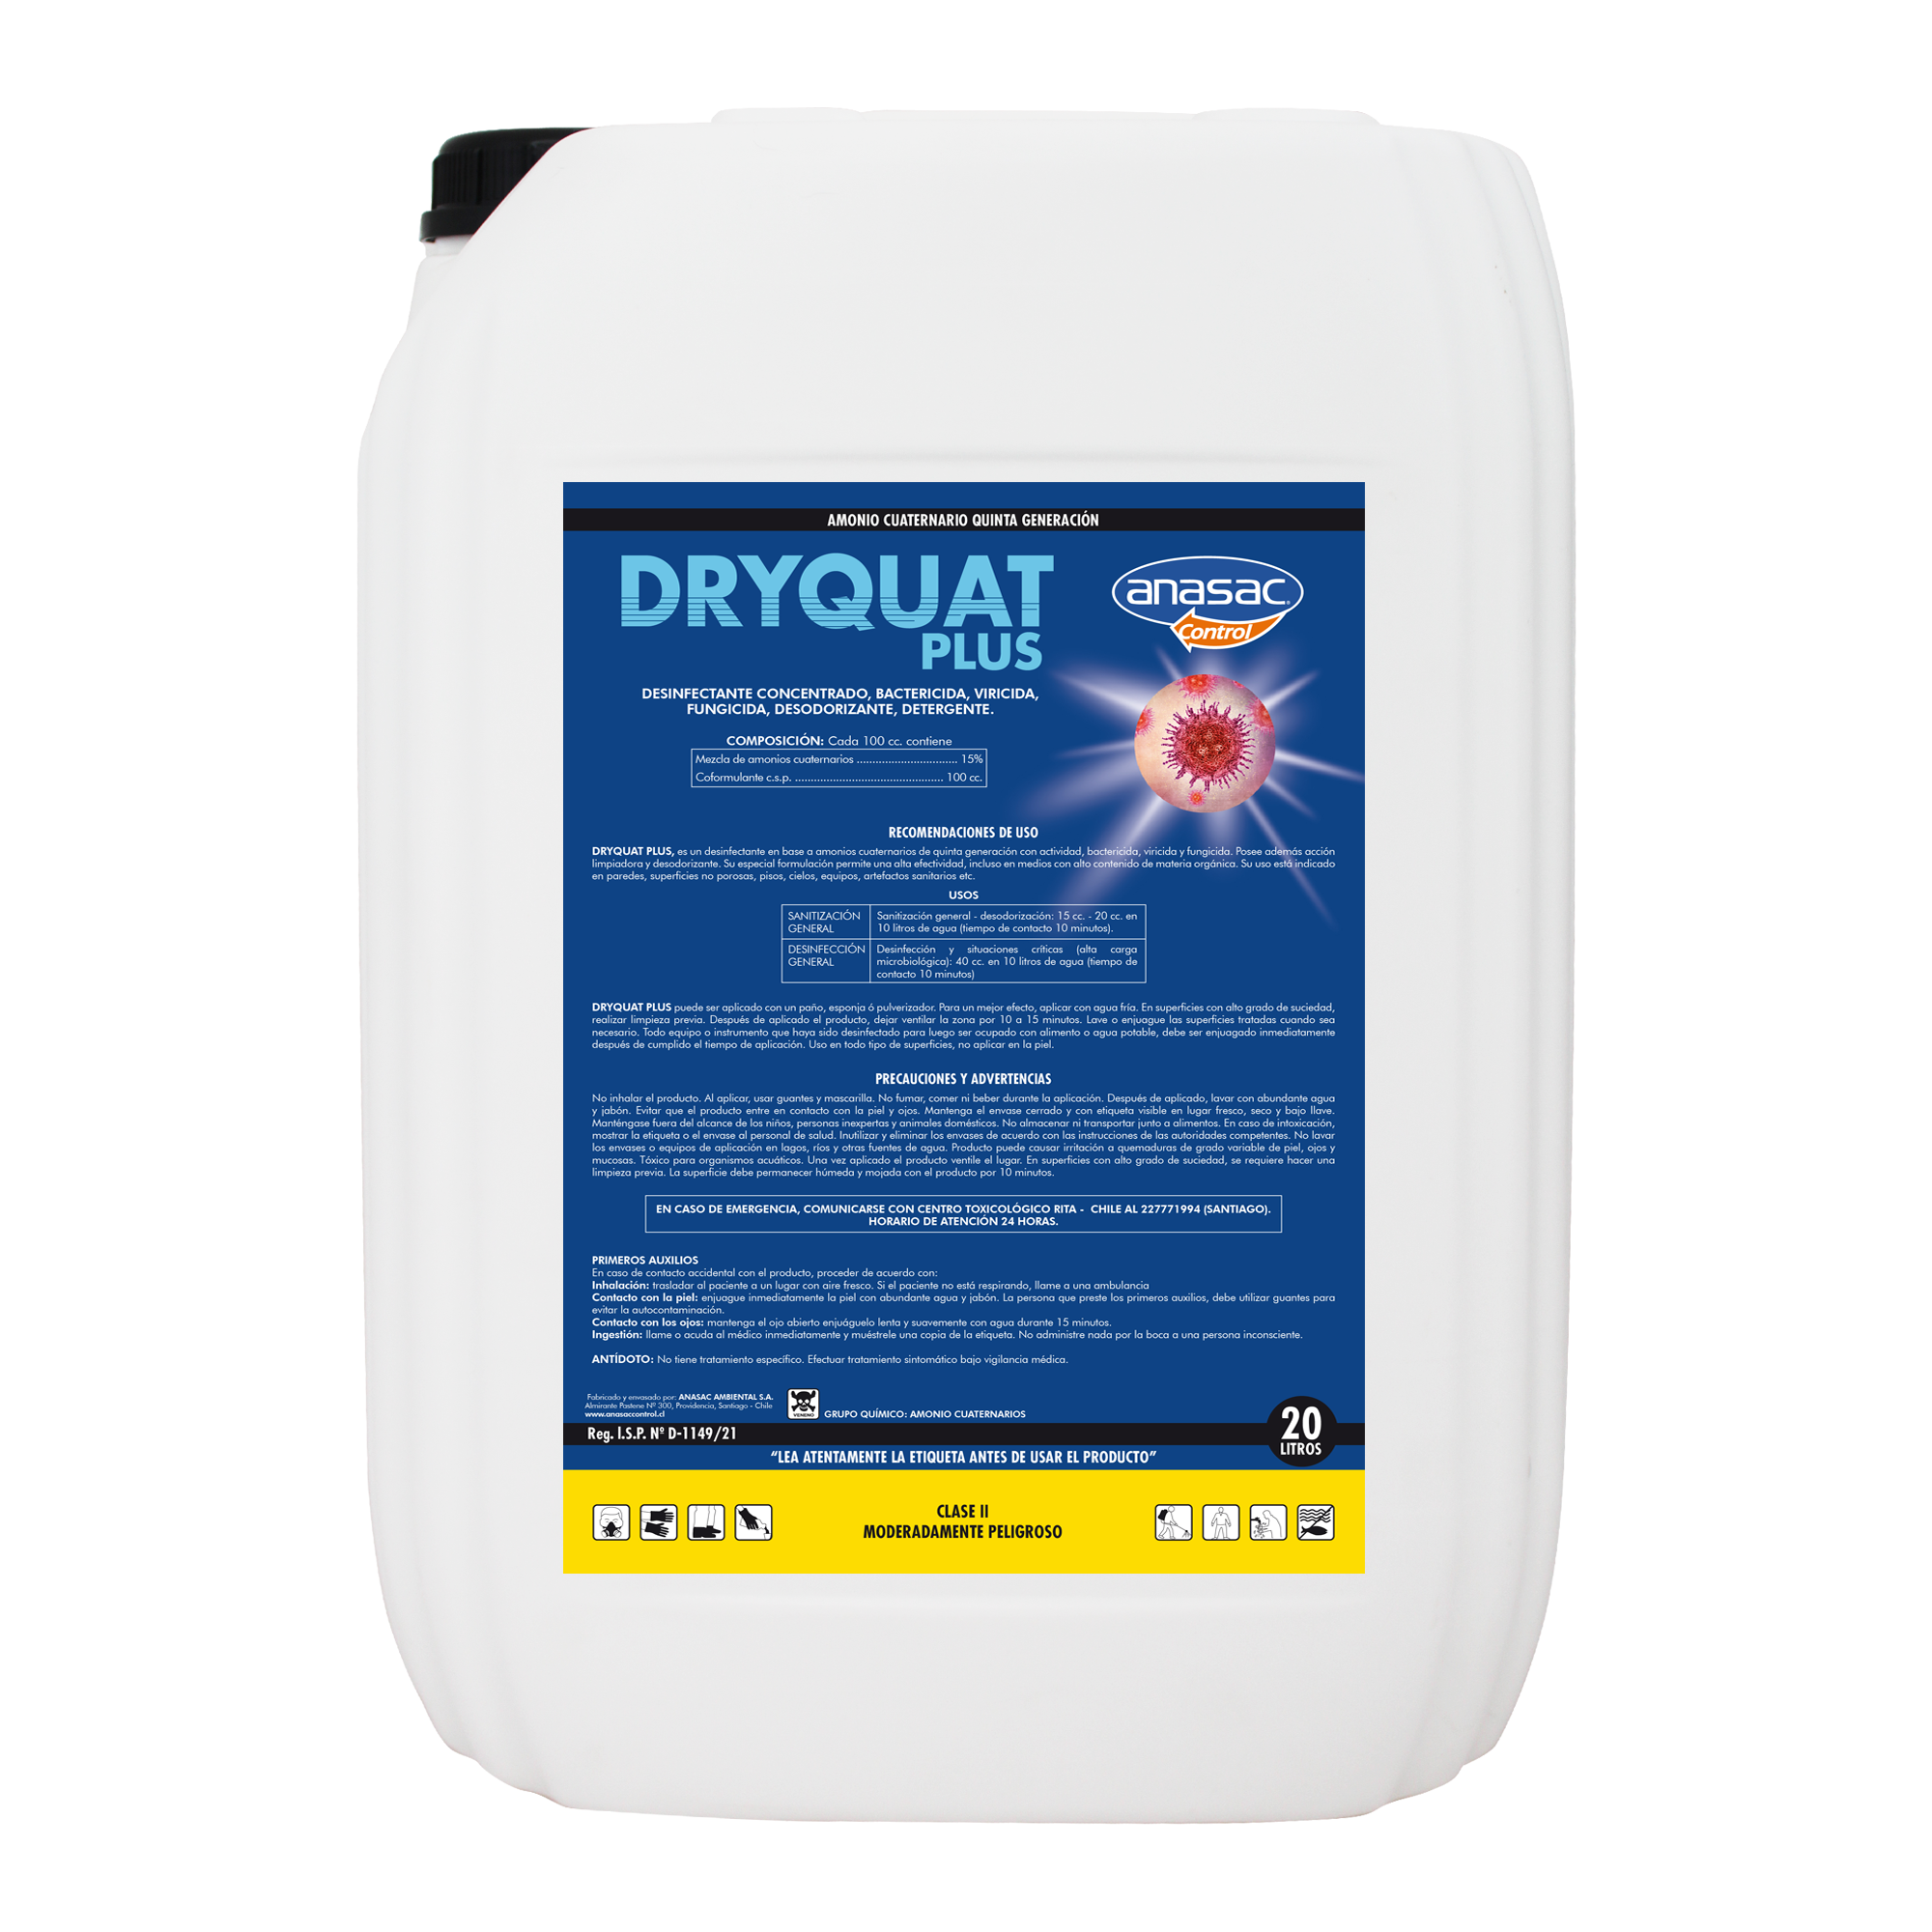 Dryquat Plus